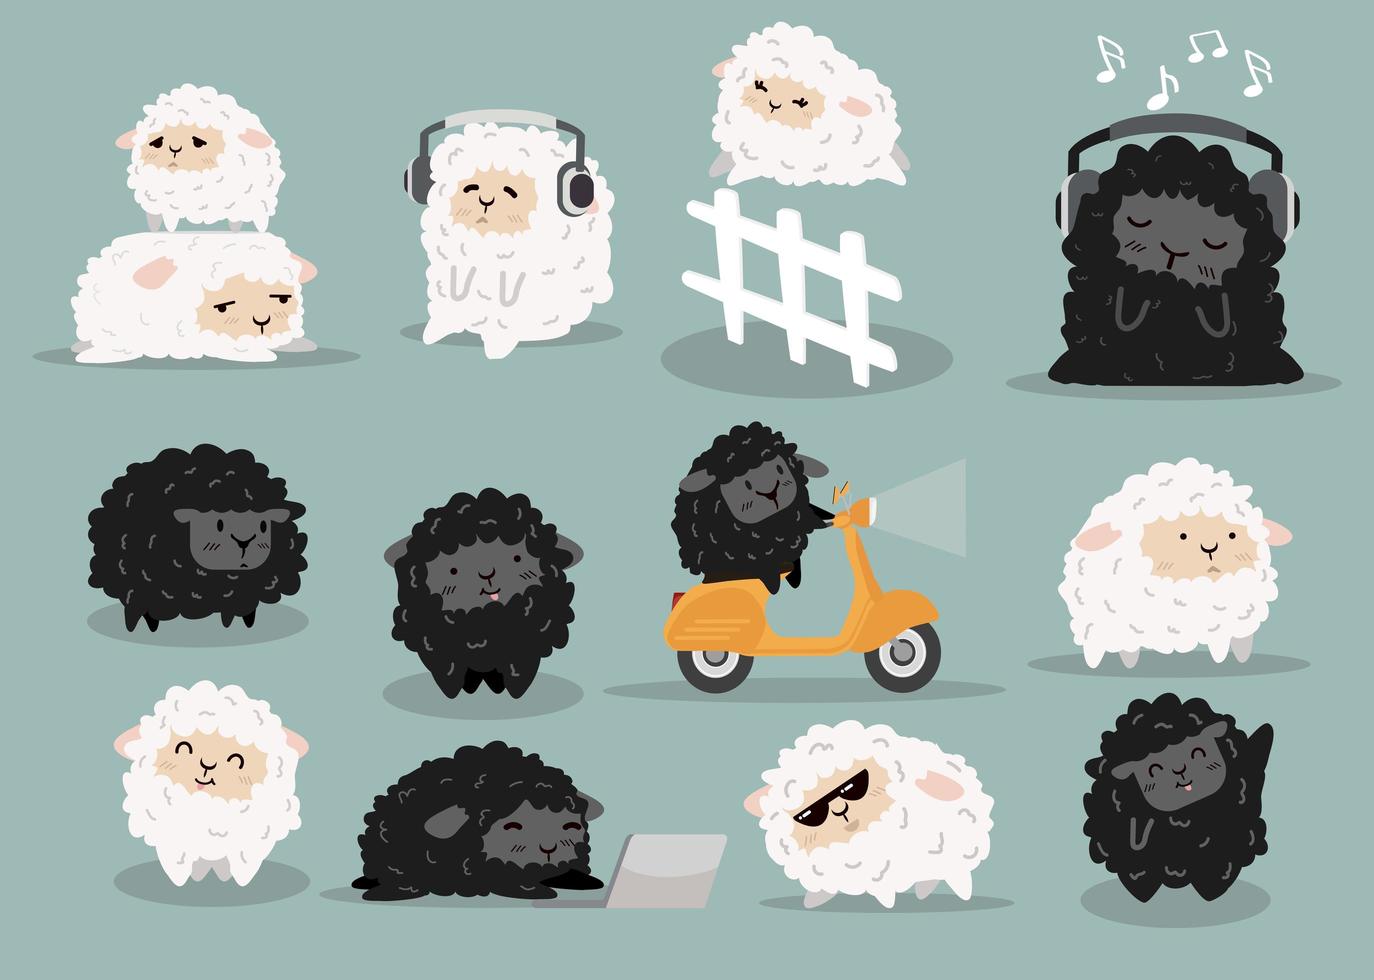 pecore carine che fanno diverse attività collezione di cartoni animati vettore